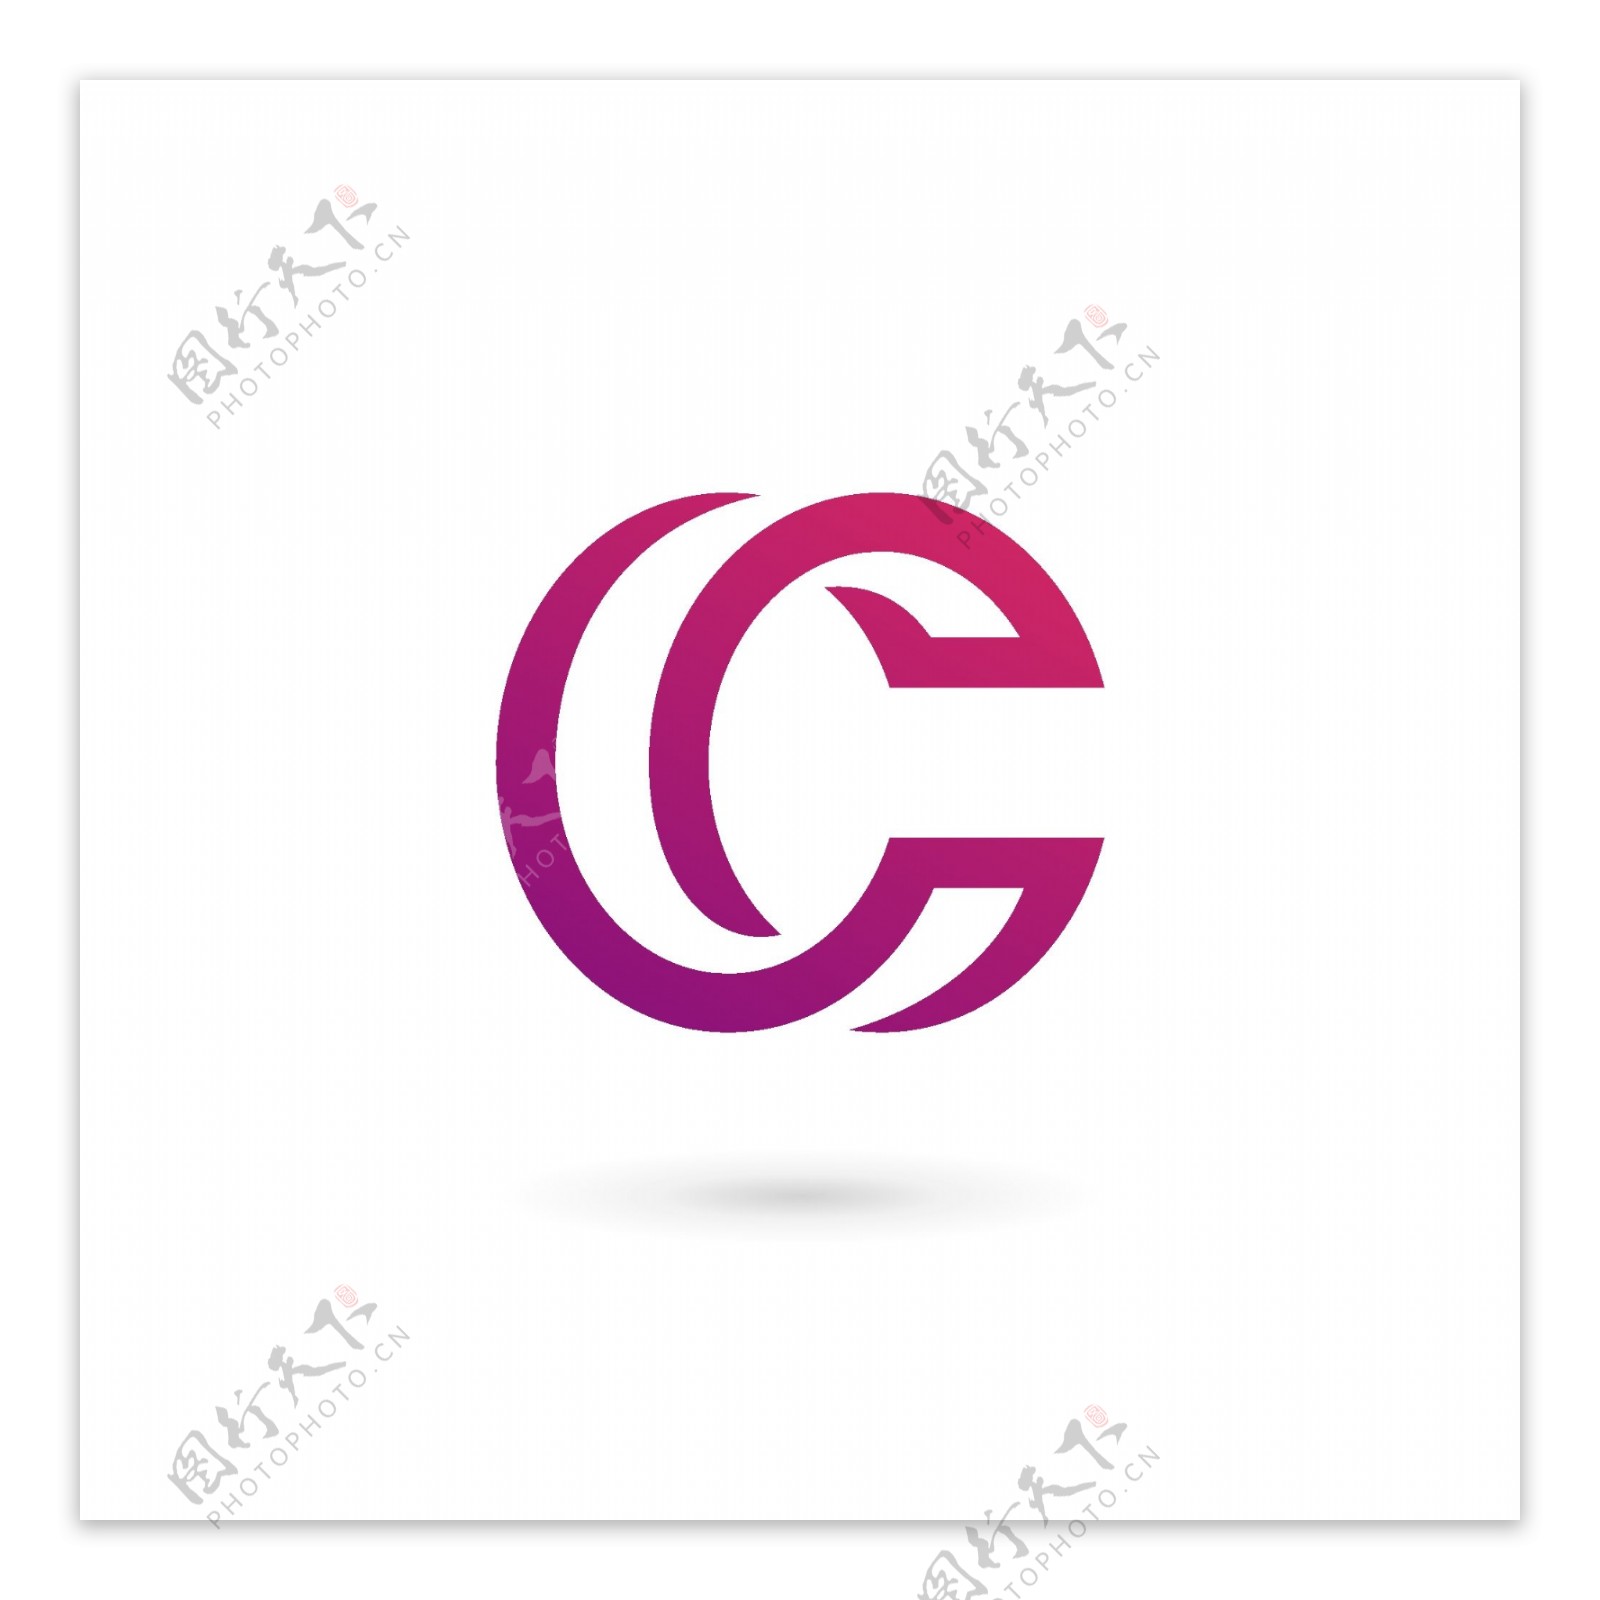 互联网形状类用途标识logo